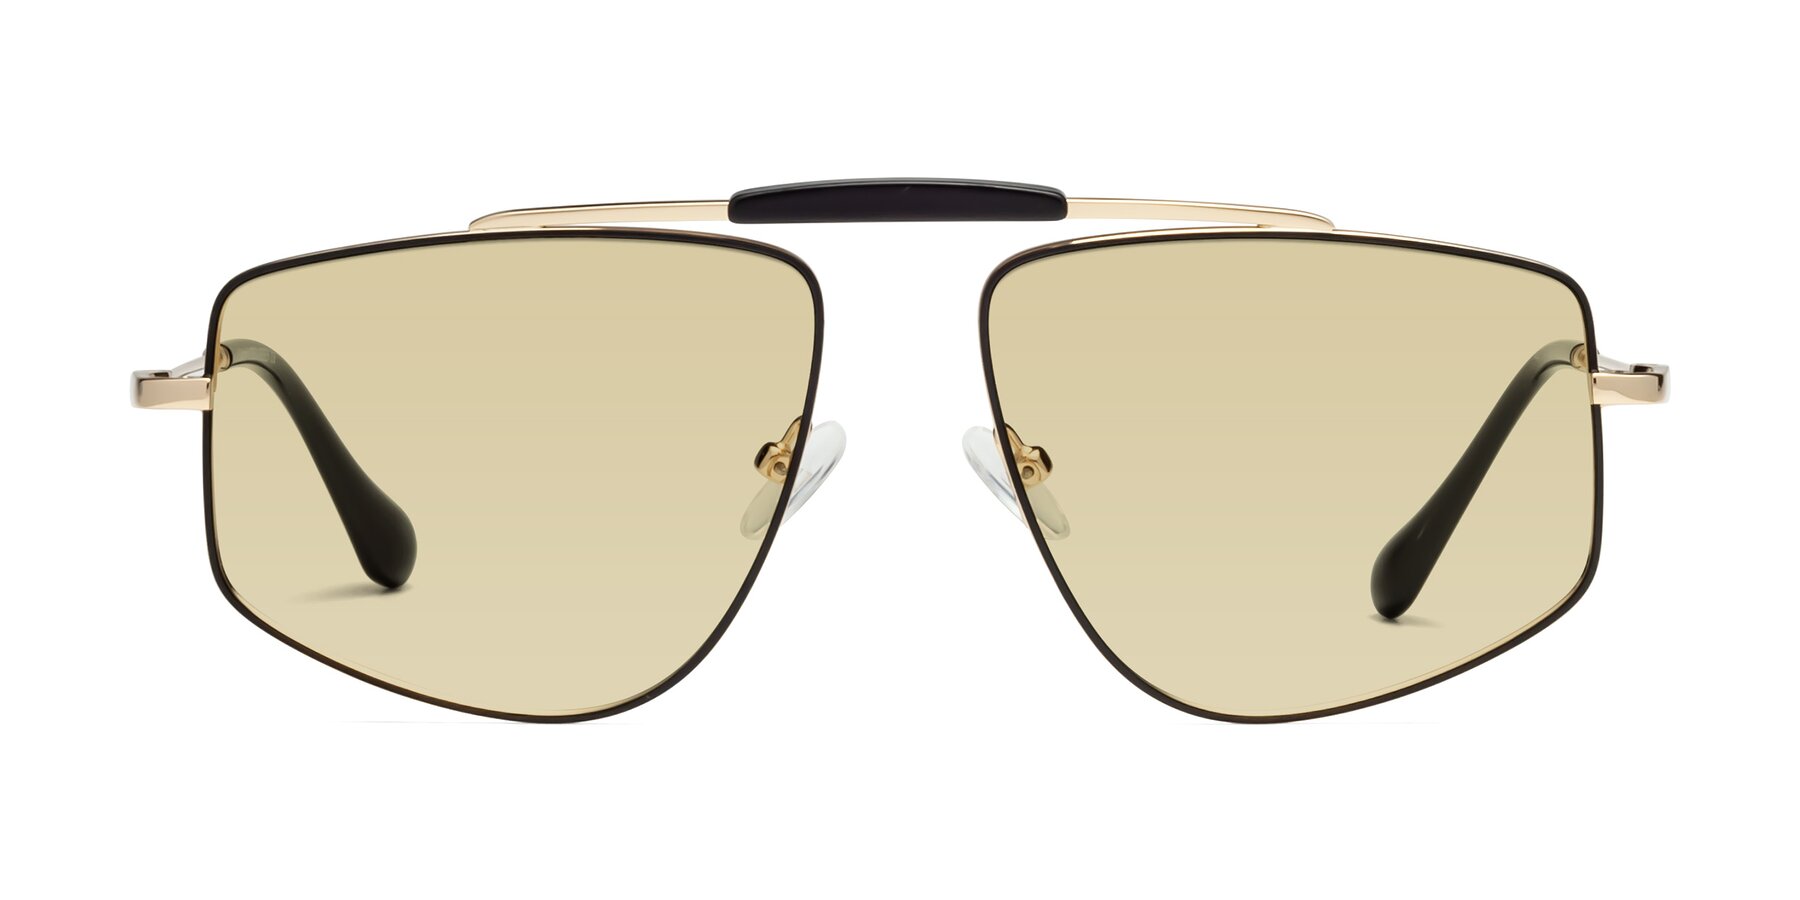 Santini - Black / Gold Sunglasses